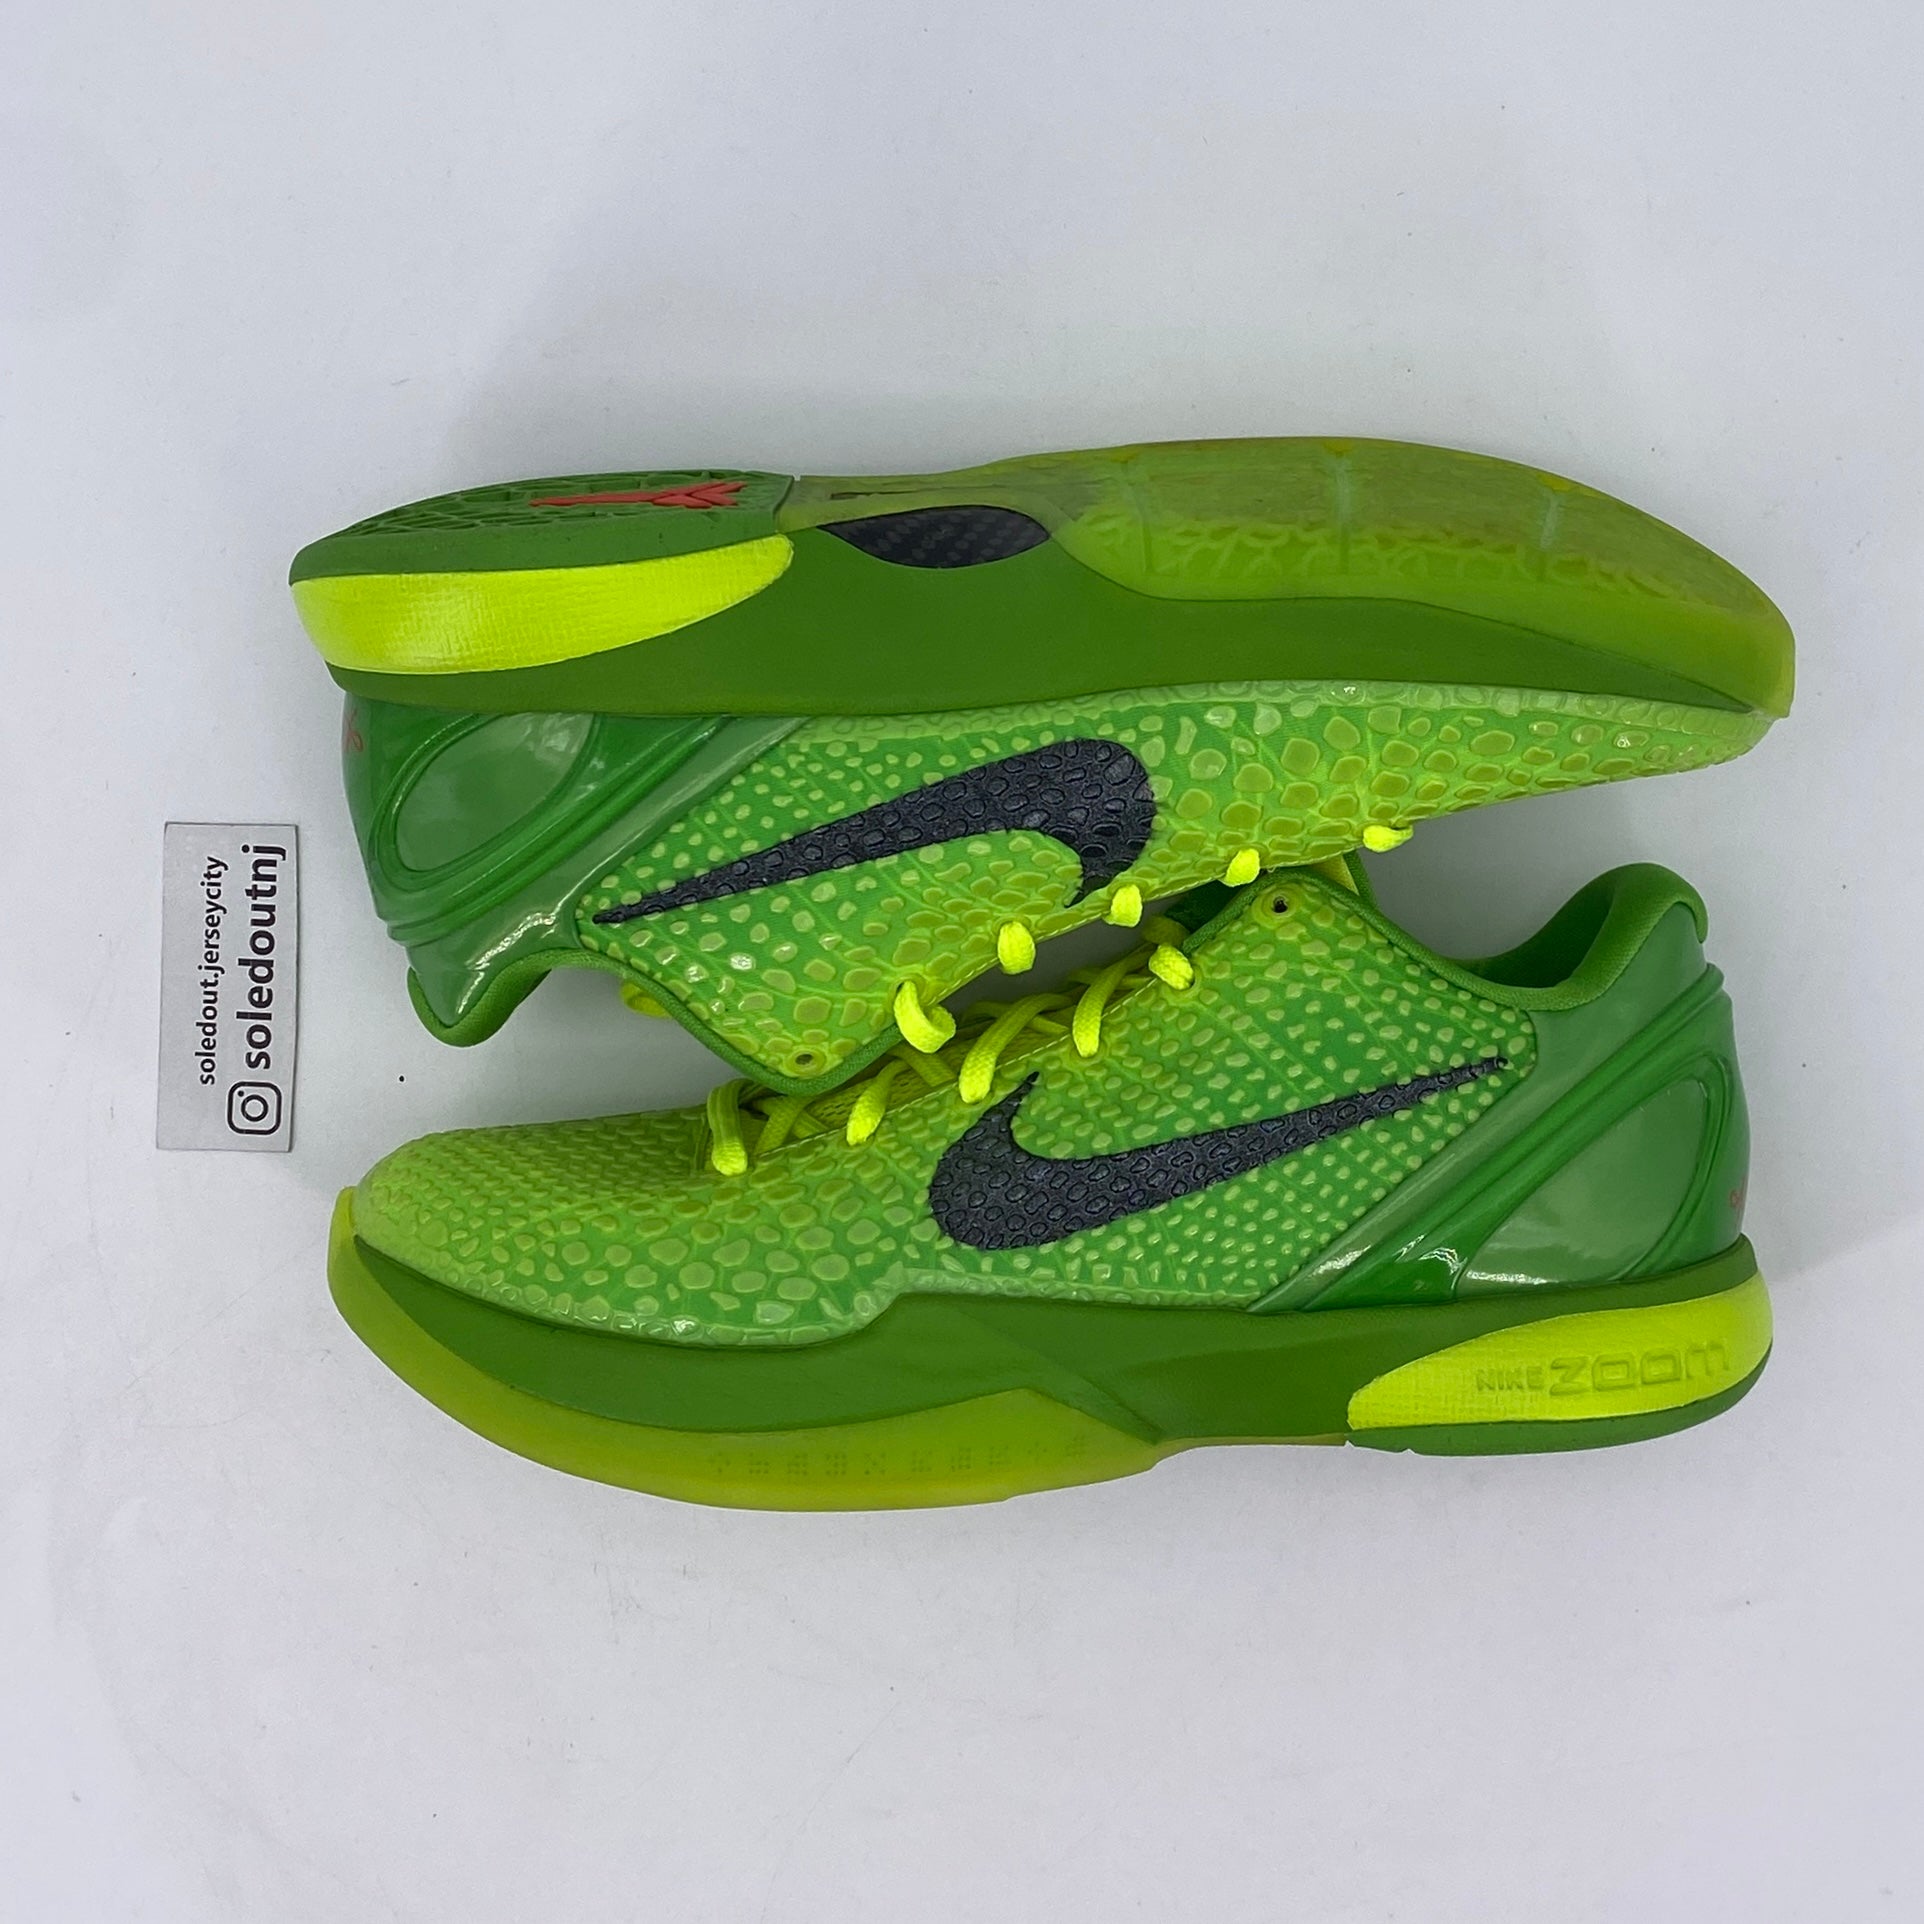 Nike Kobe 6 Protro "Grinch" 2020 Used Size 9